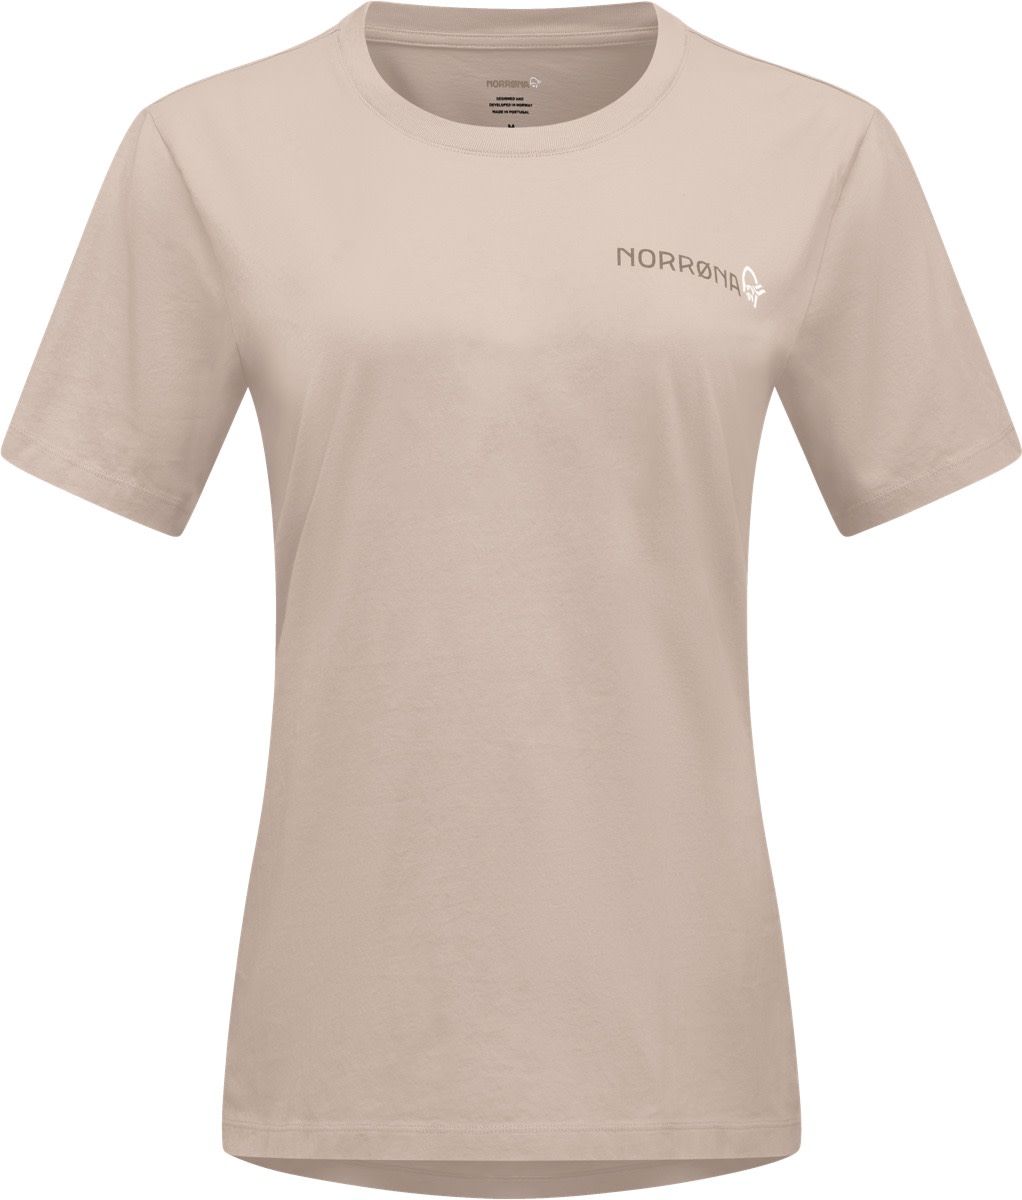 Norrøna Women's /29 Cotton Duotone T-Shirt Pure Cashmere